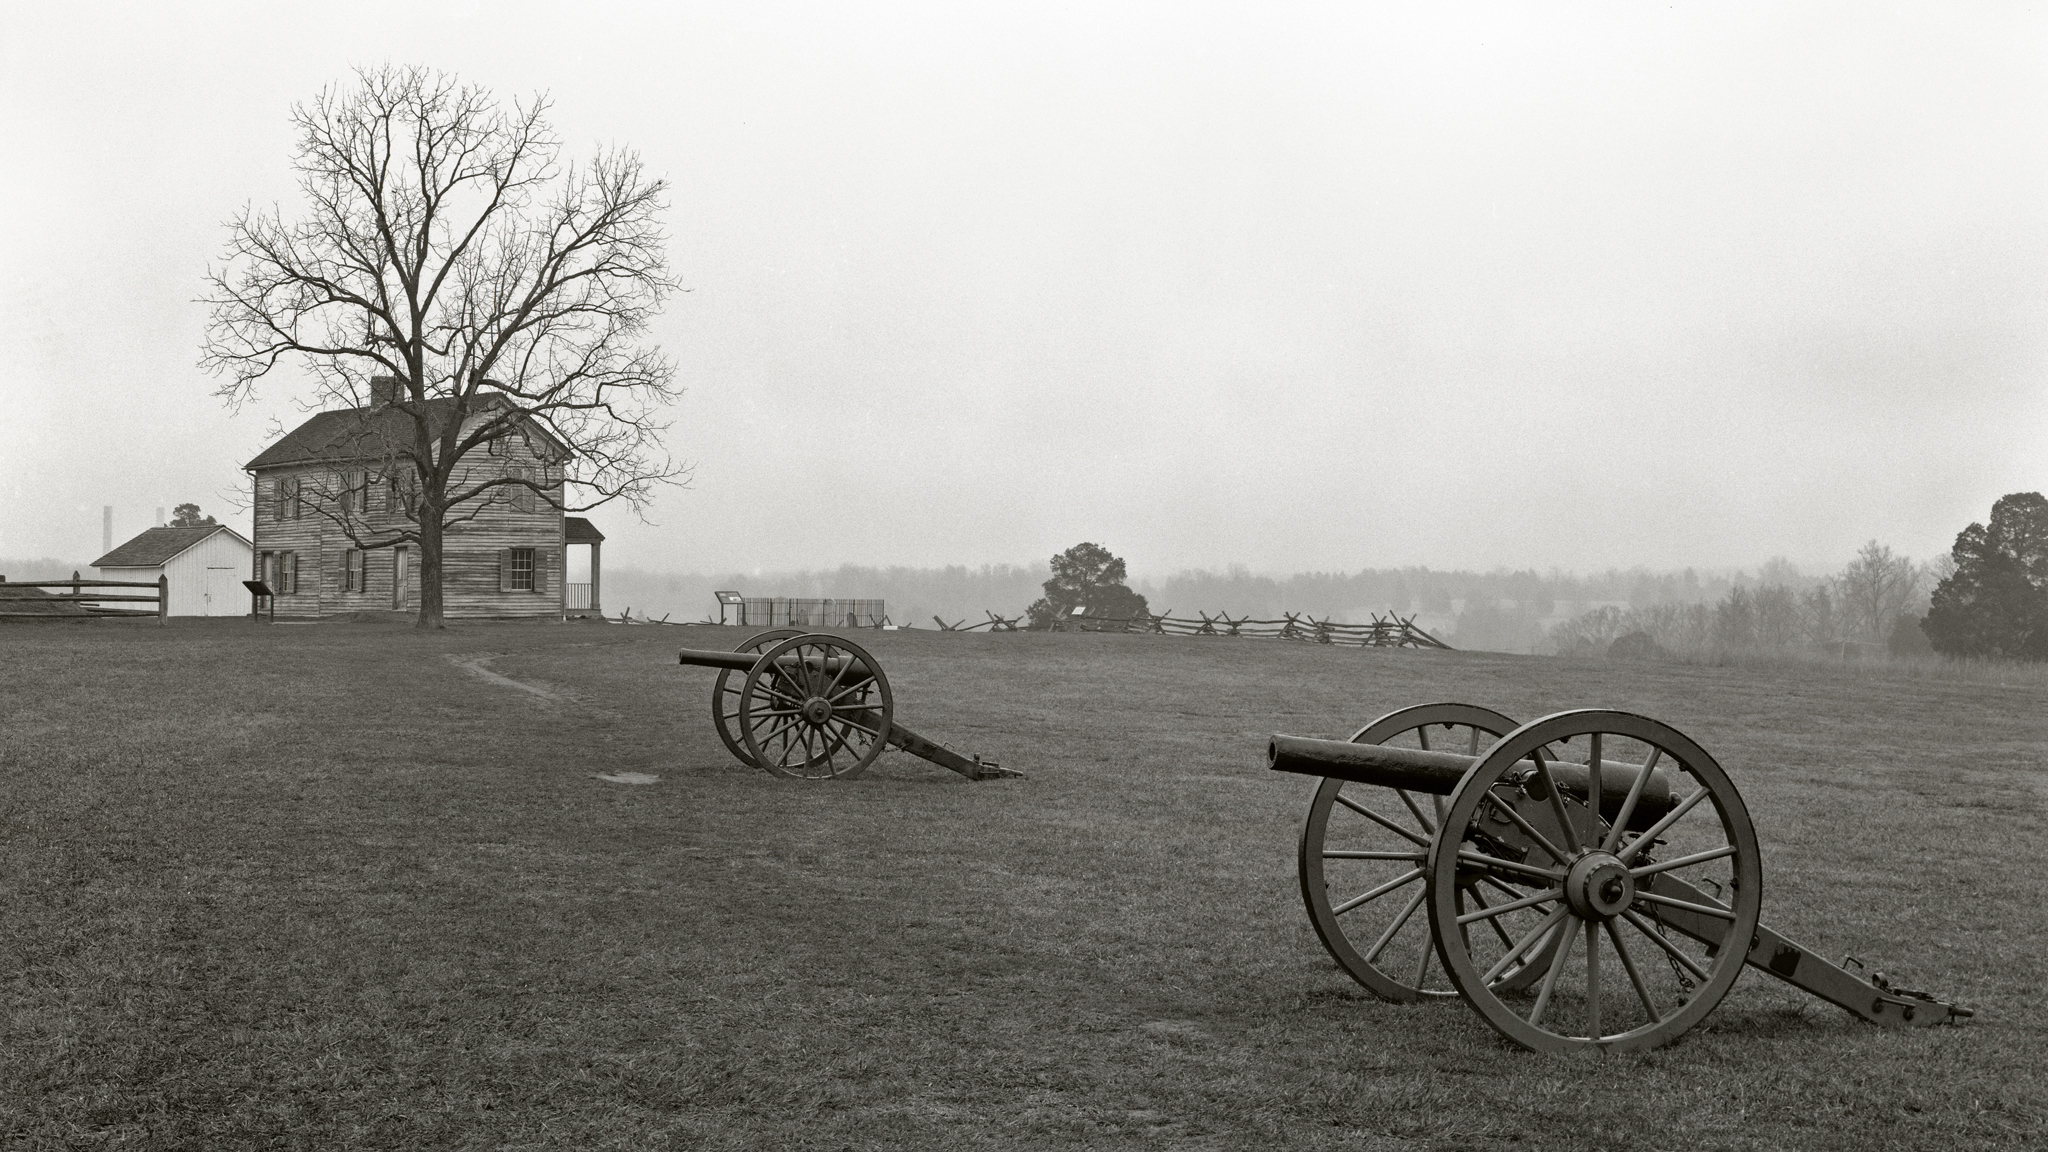  Henry Farm. &nbsp;Manassas, Virginia. 